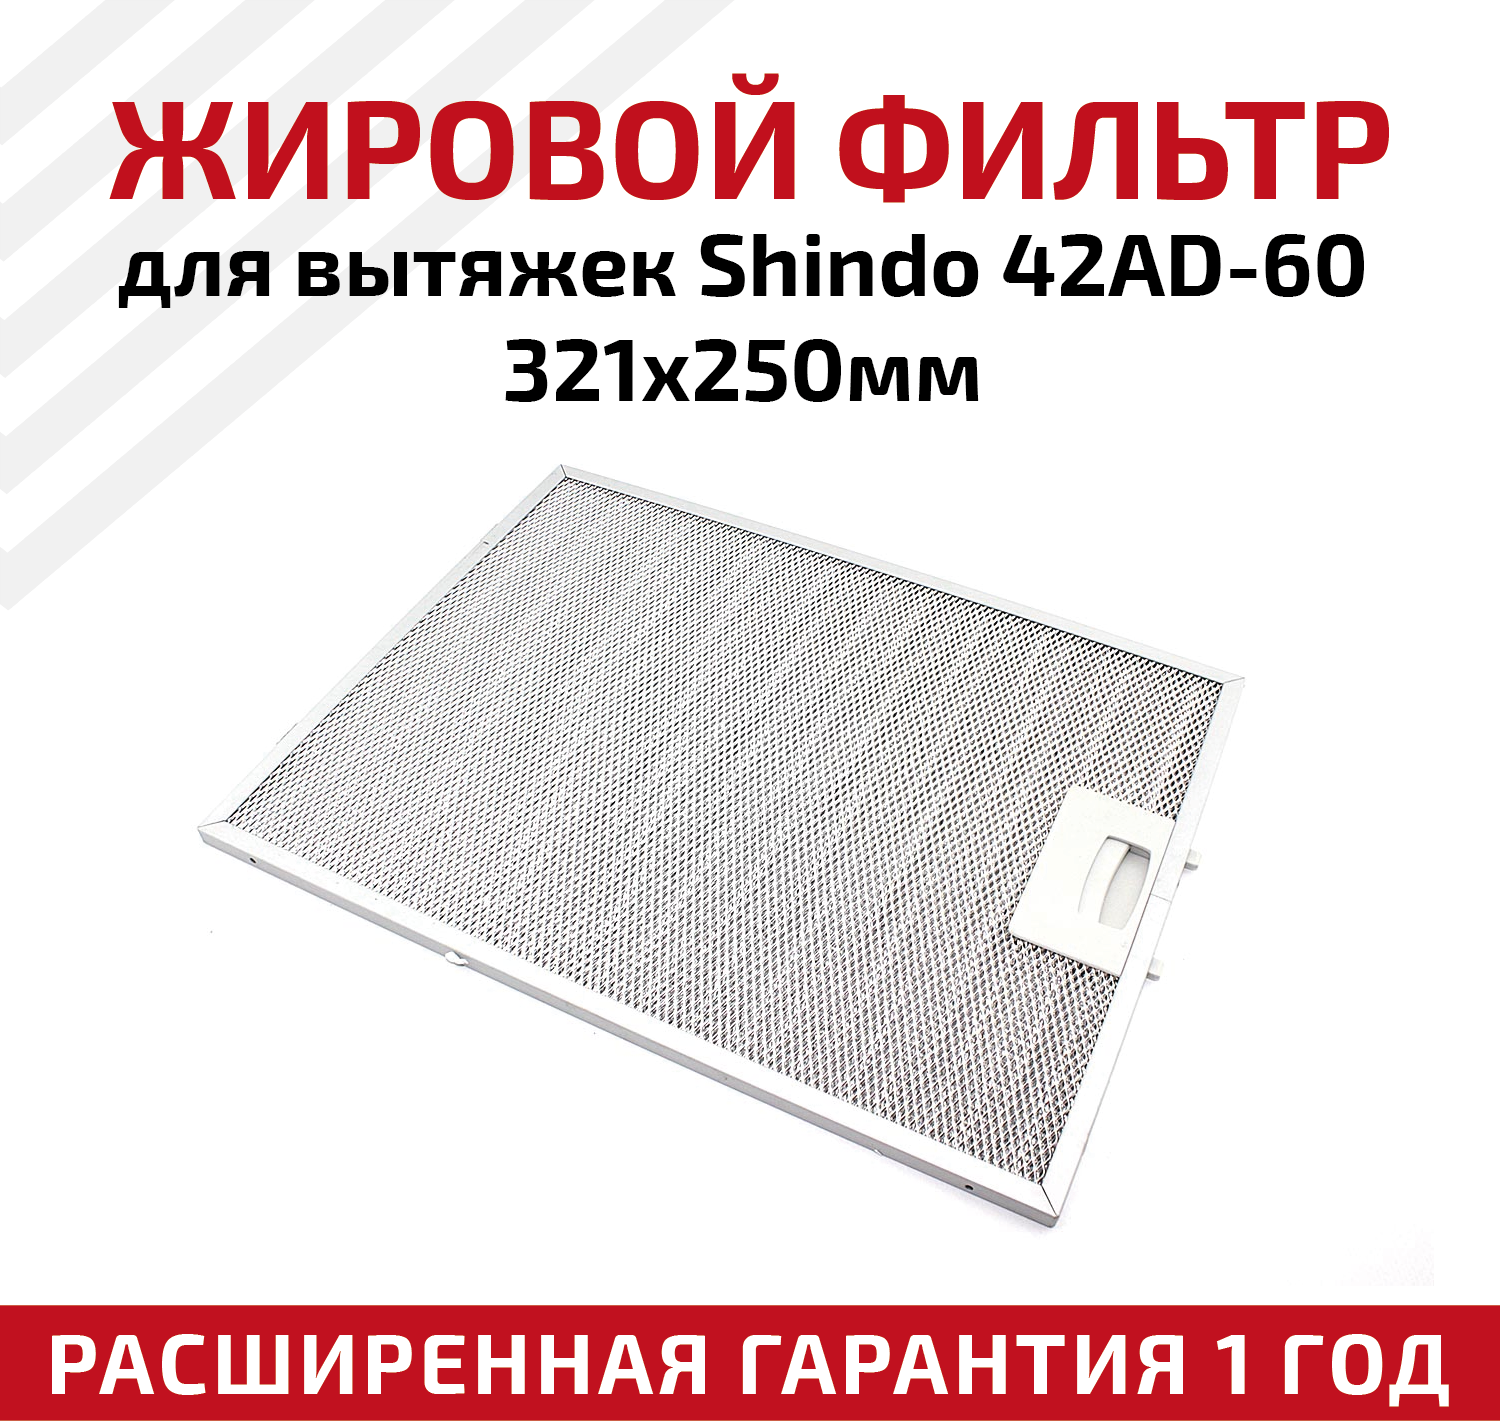 Жировой фильтр (кассета) алюминиевый (металлический) рамочный для кухонных вытяжек Shindo 42AD-60, многоразовый, 321х250мм